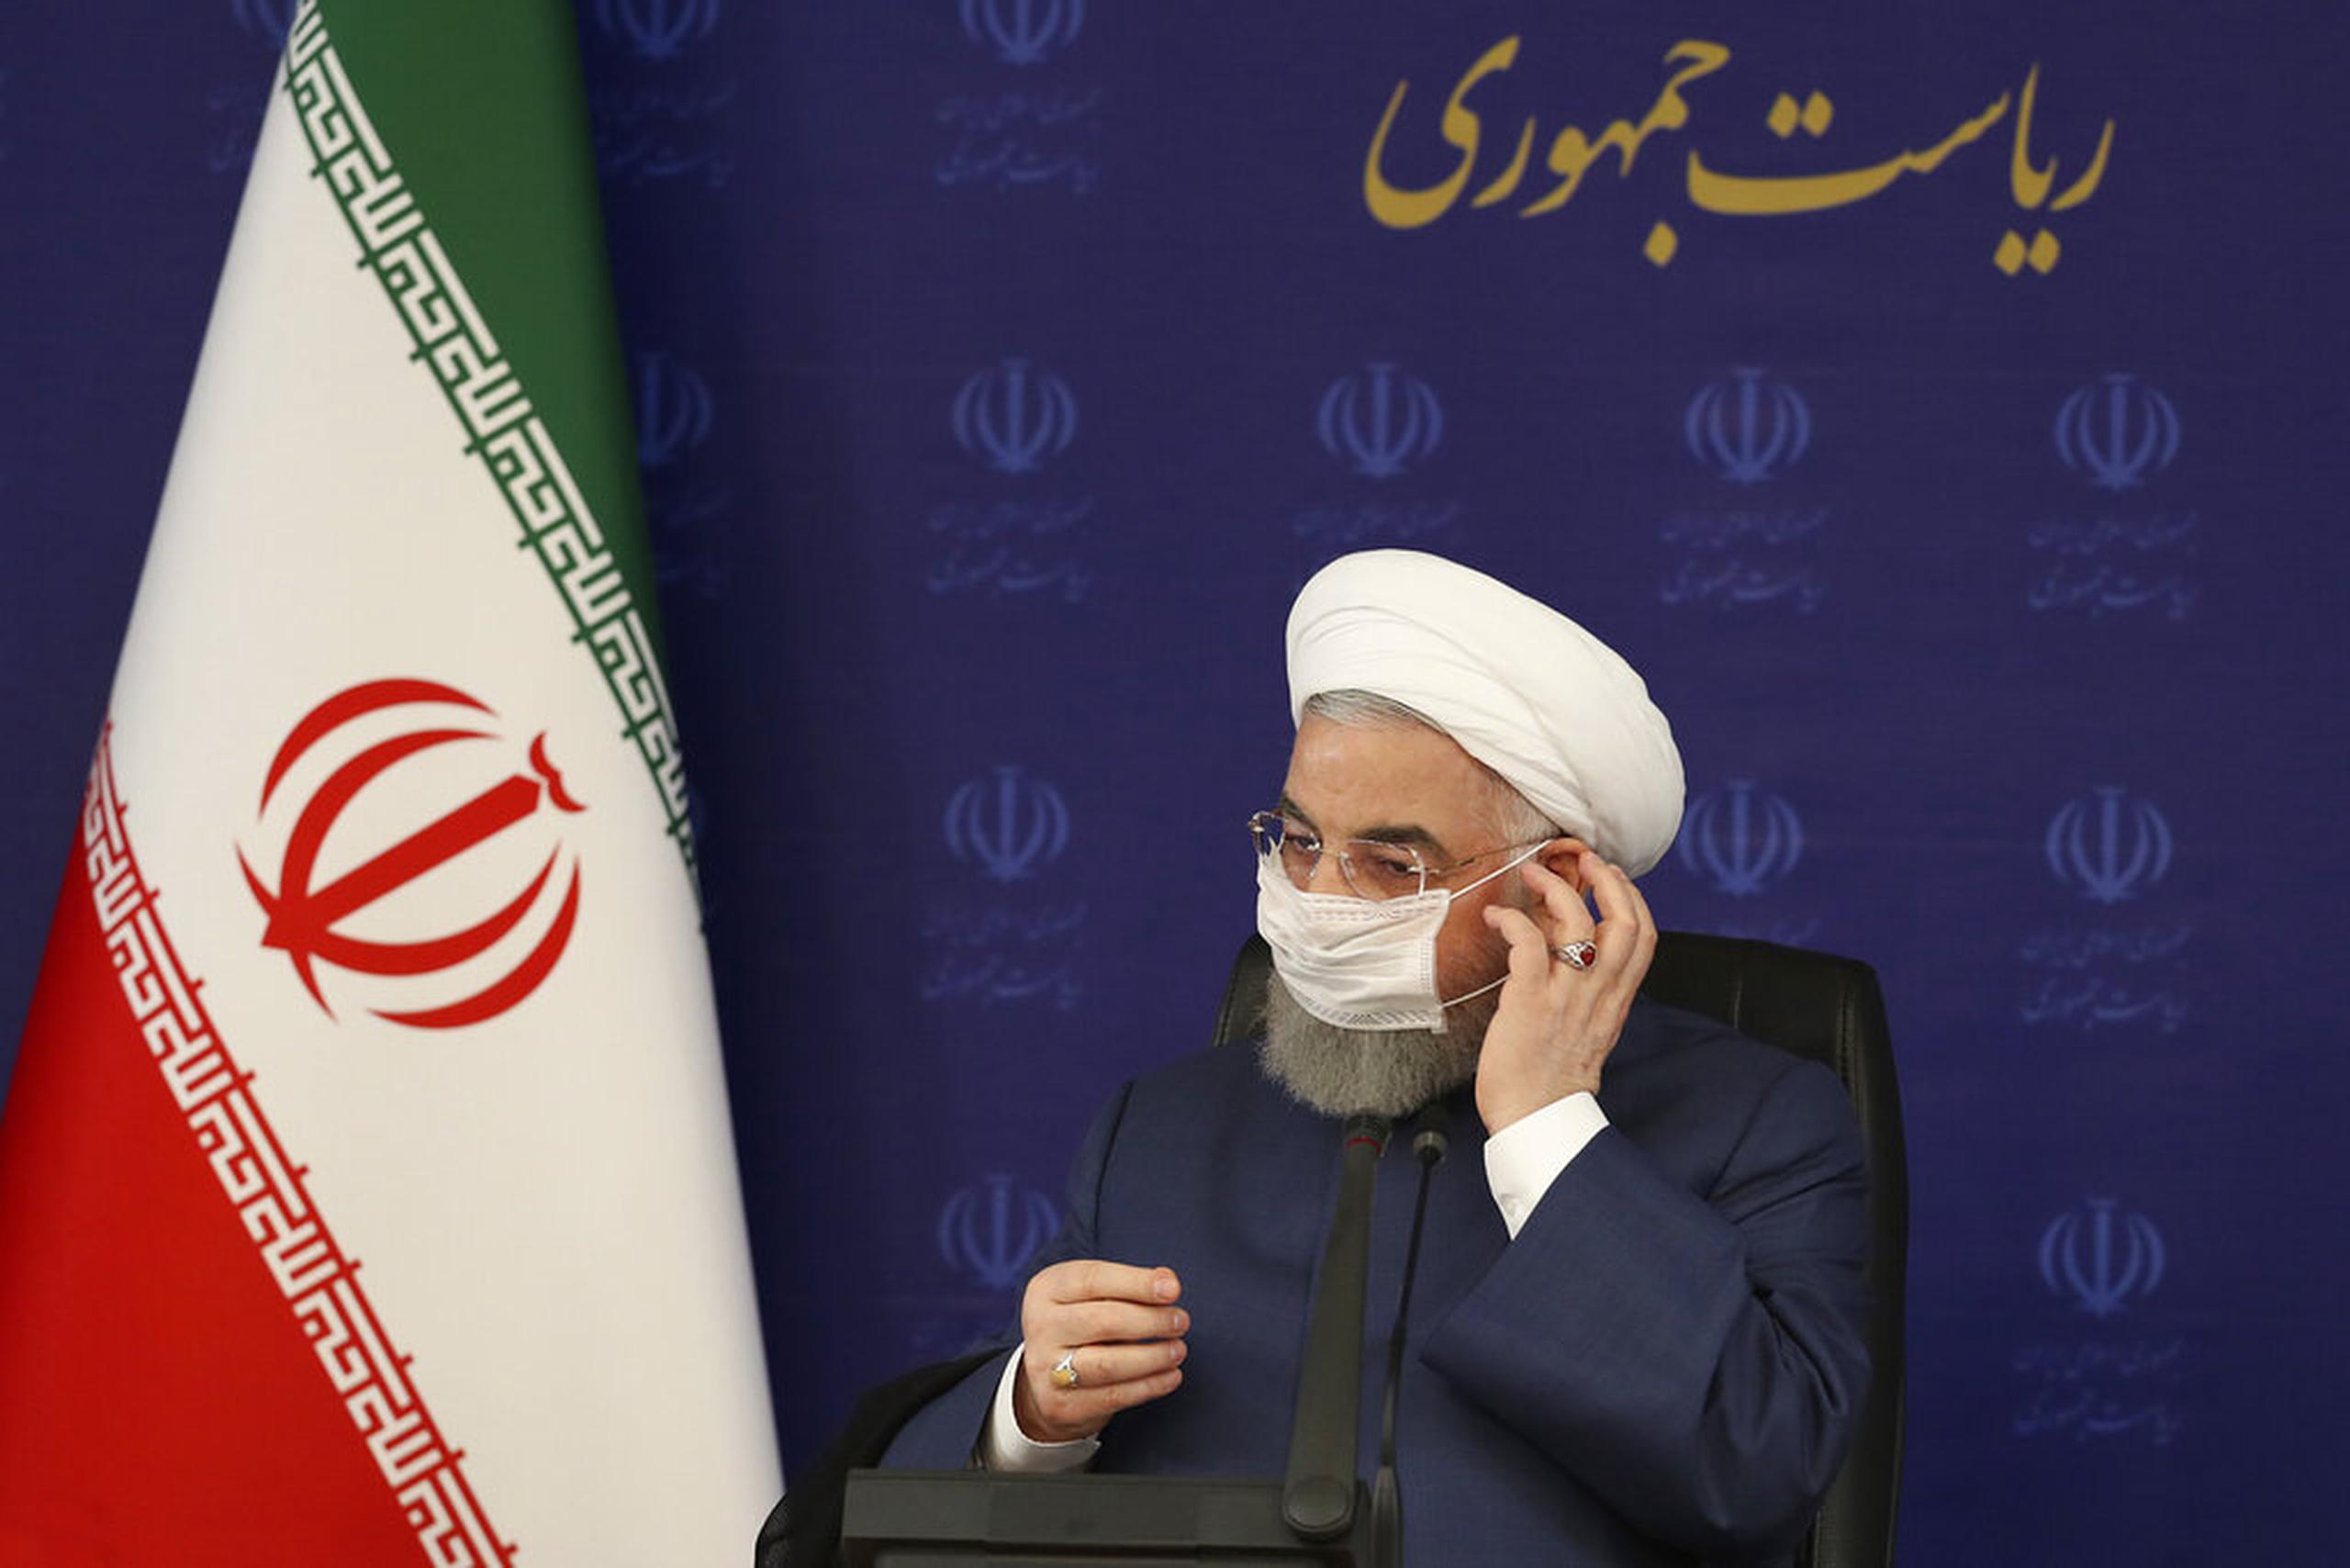 El presidente de Irán, Hasán Ruhani se ajusta la mascarilla en una reunión sobre la lucha contra el COVID-19 hoy en Teherán.